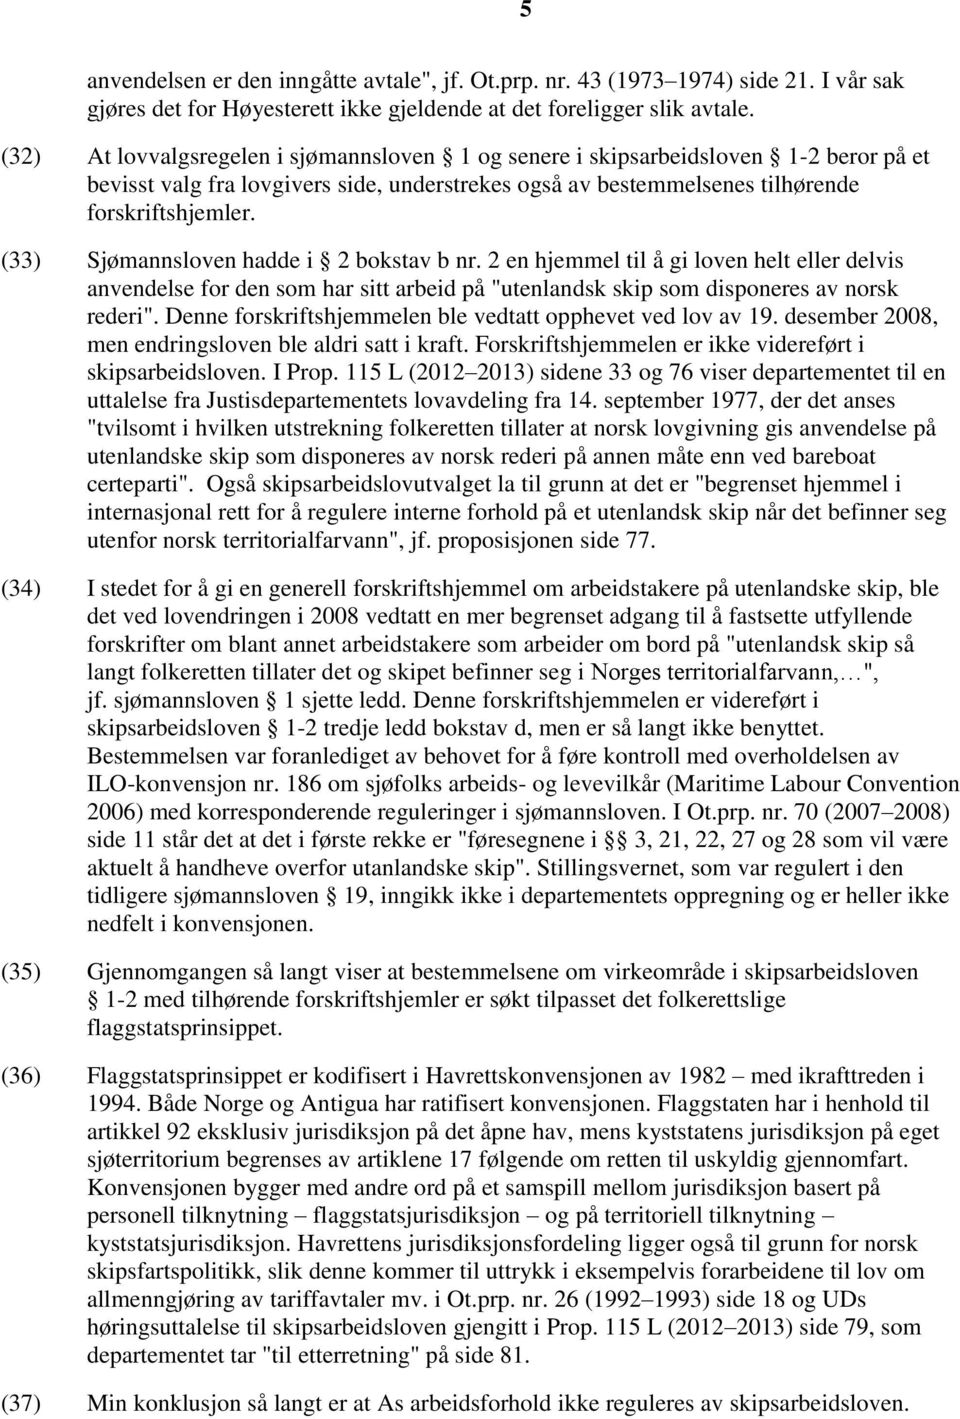 (33) Sjømannsloven hadde i 2 bokstav b nr. 2 en hjemmel til å gi loven helt eller delvis anvendelse for den som har sitt arbeid på "utenlandsk skip som disponeres av norsk rederi".